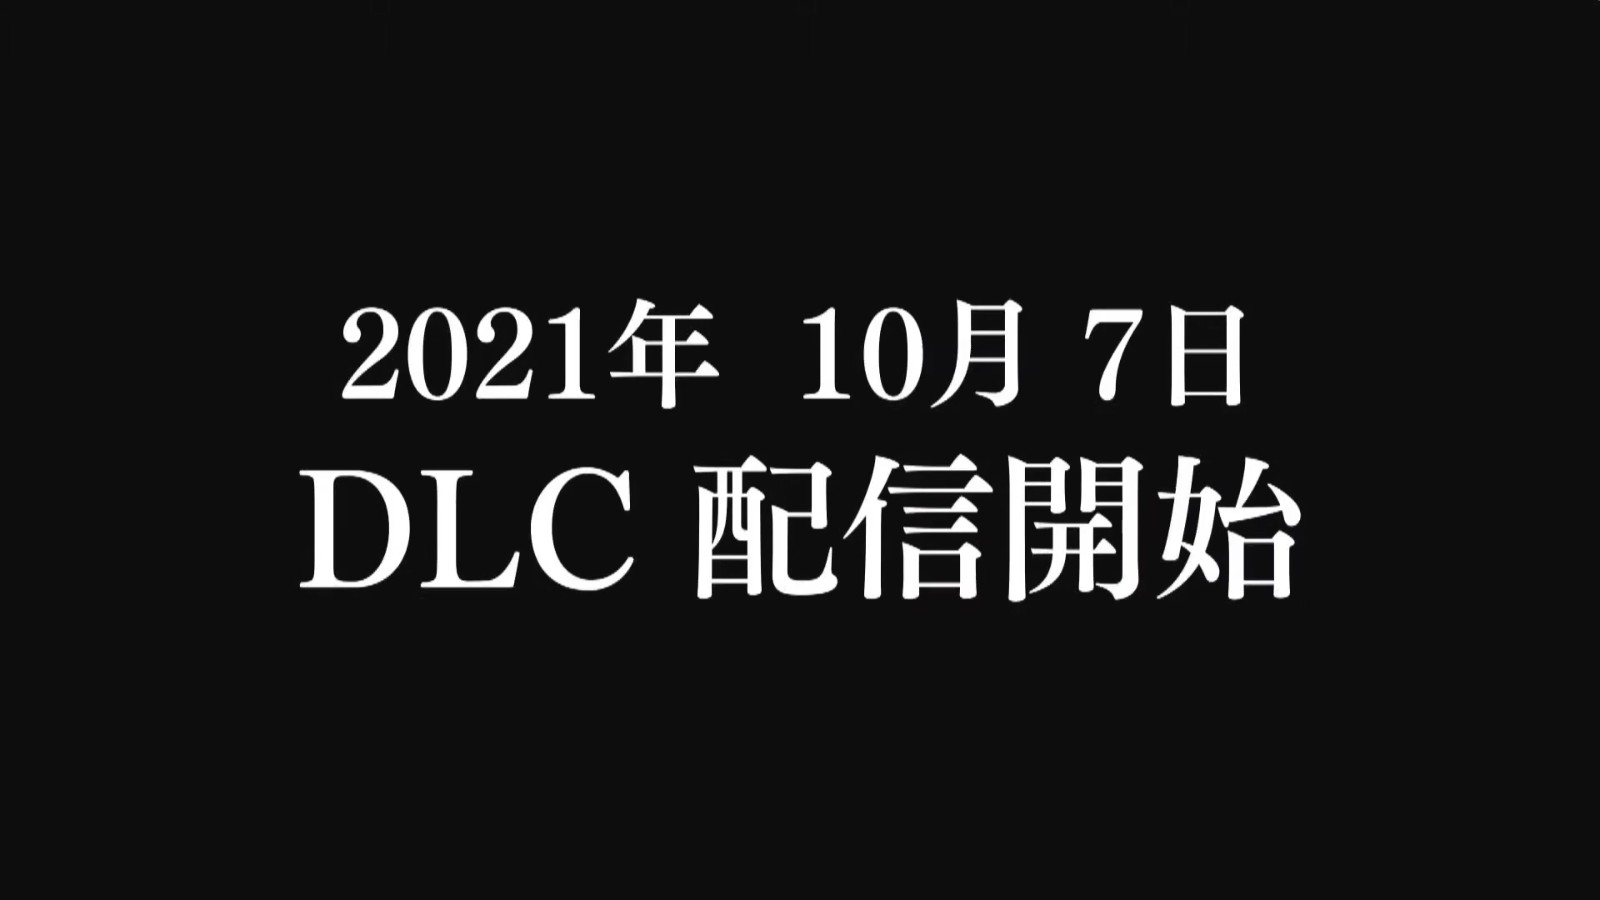 《破晓传说》与《刀剑神域》联动DLC公布 10月7日上线